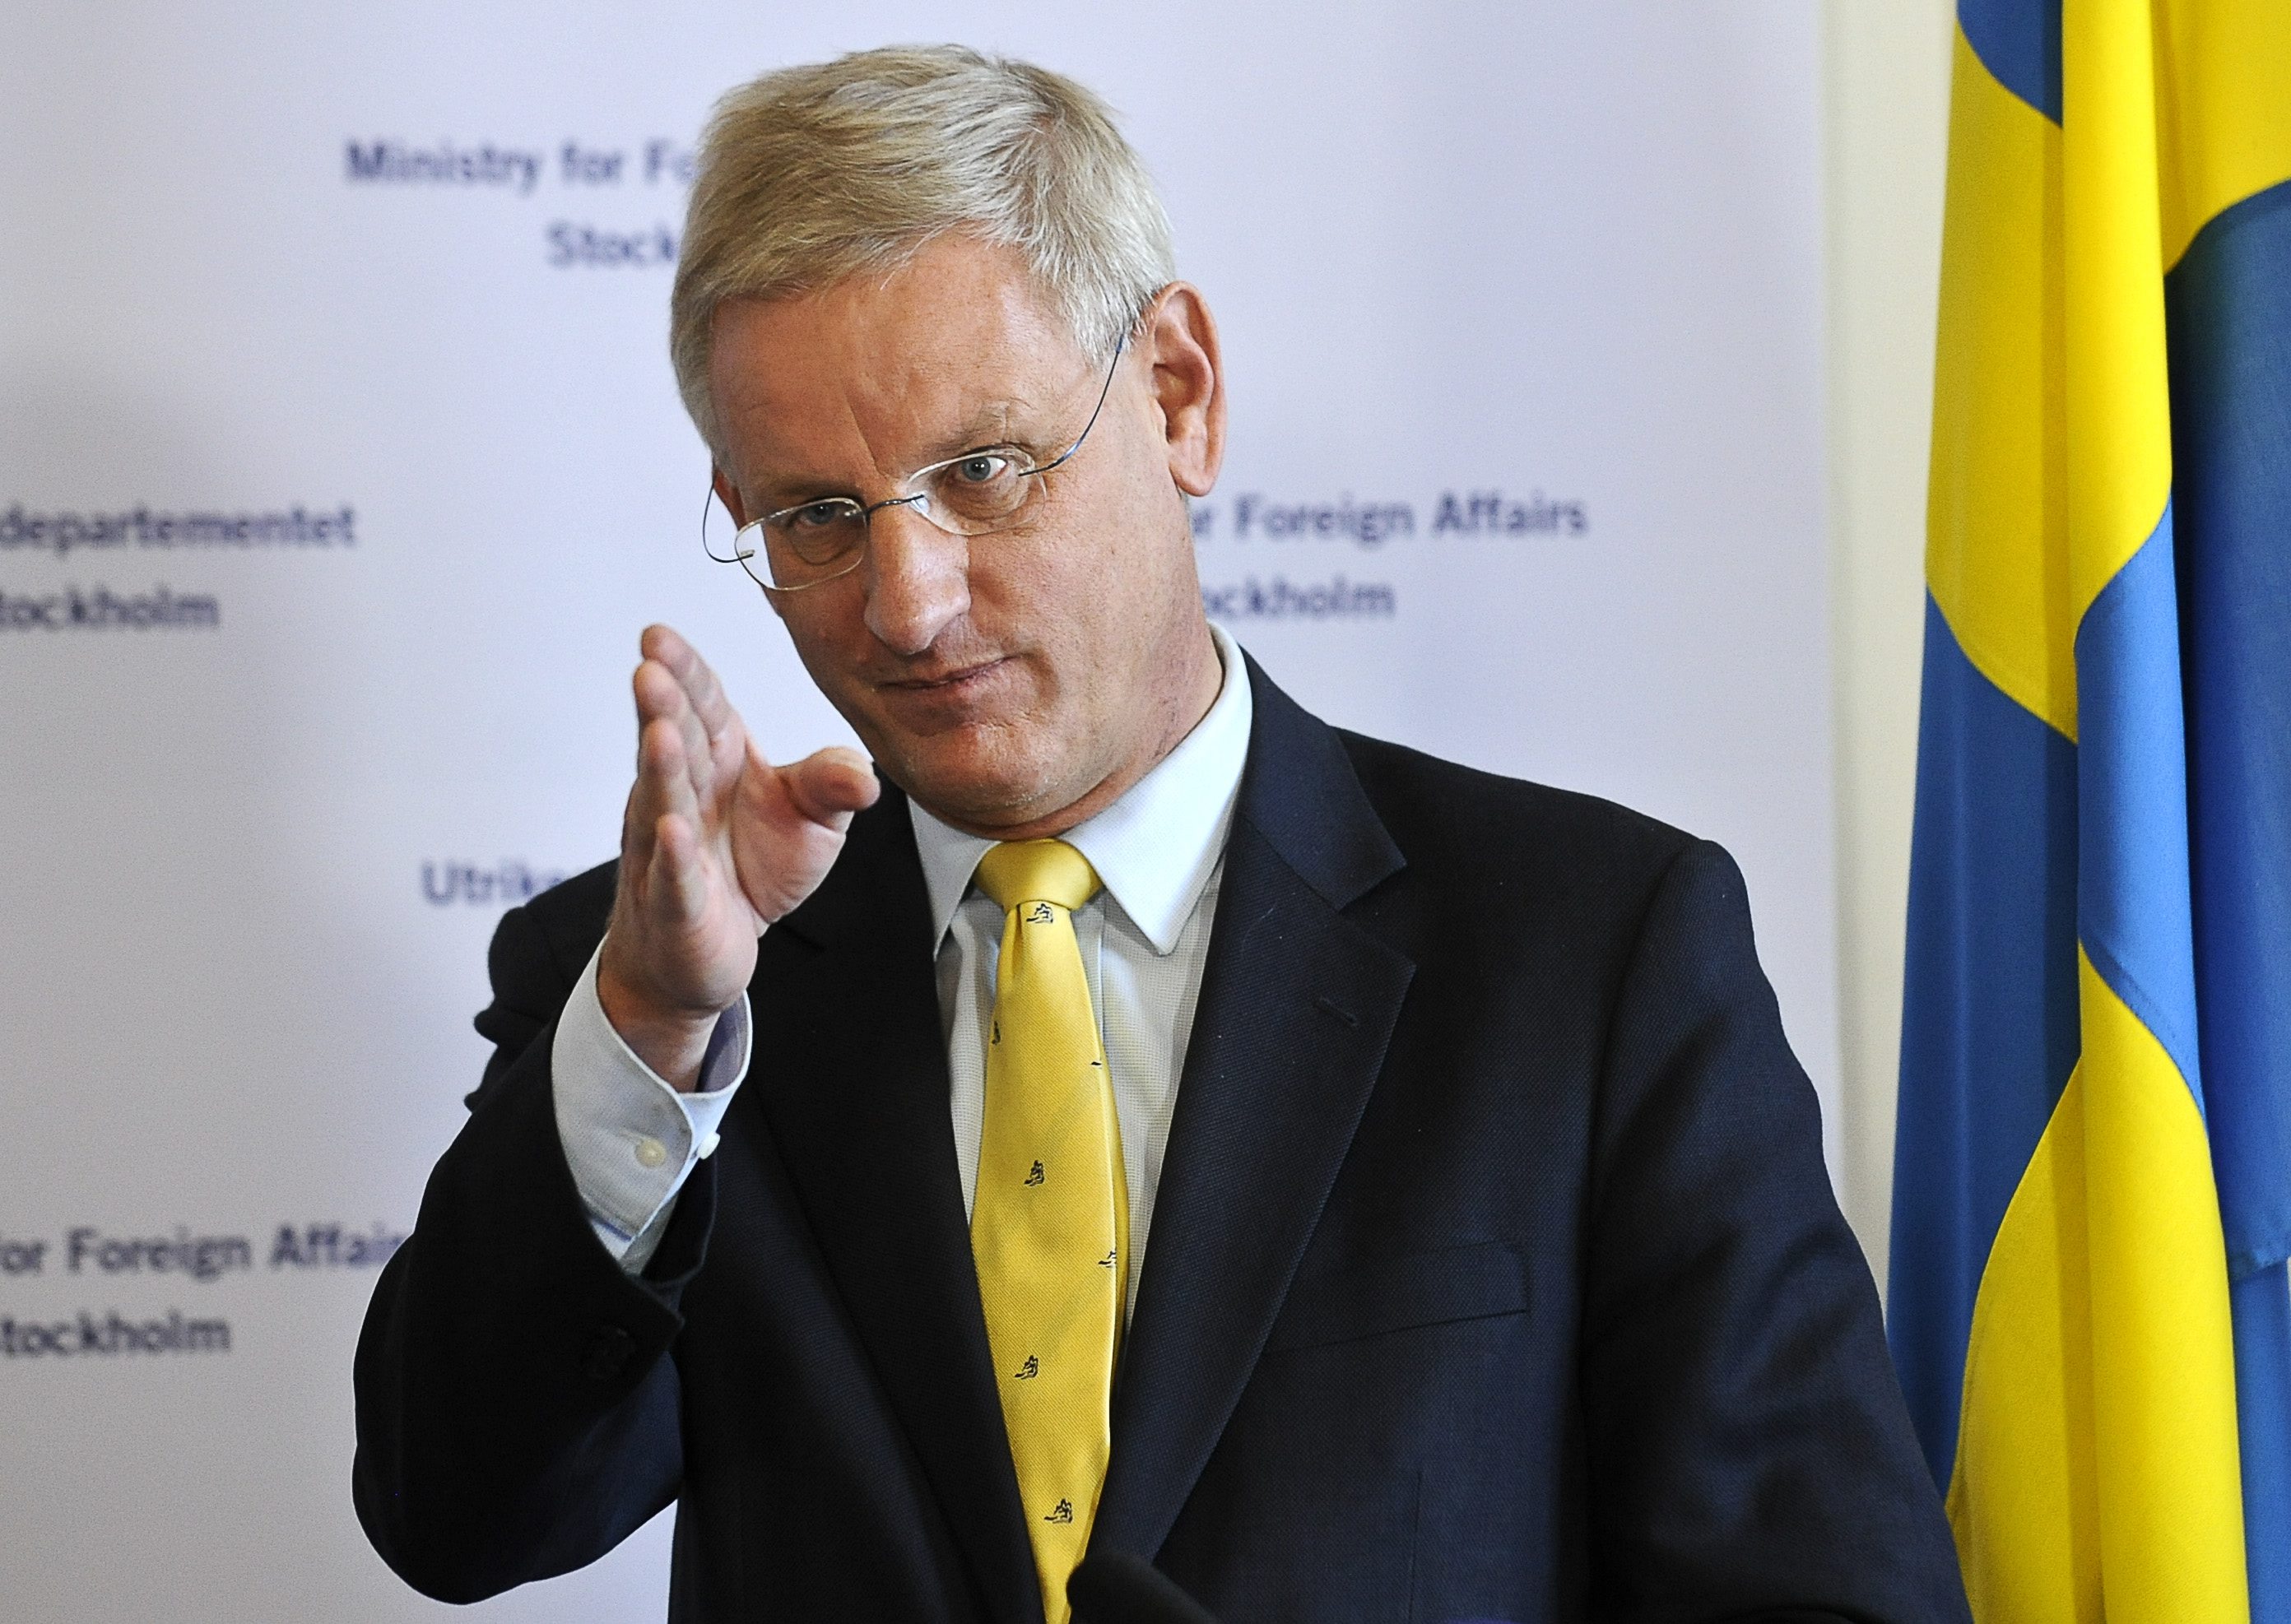 Sjöstedt är besviken på Utrikesminister Carl Bildts svaga formulering om att svenskarna ”bör försättas på fri fot”.